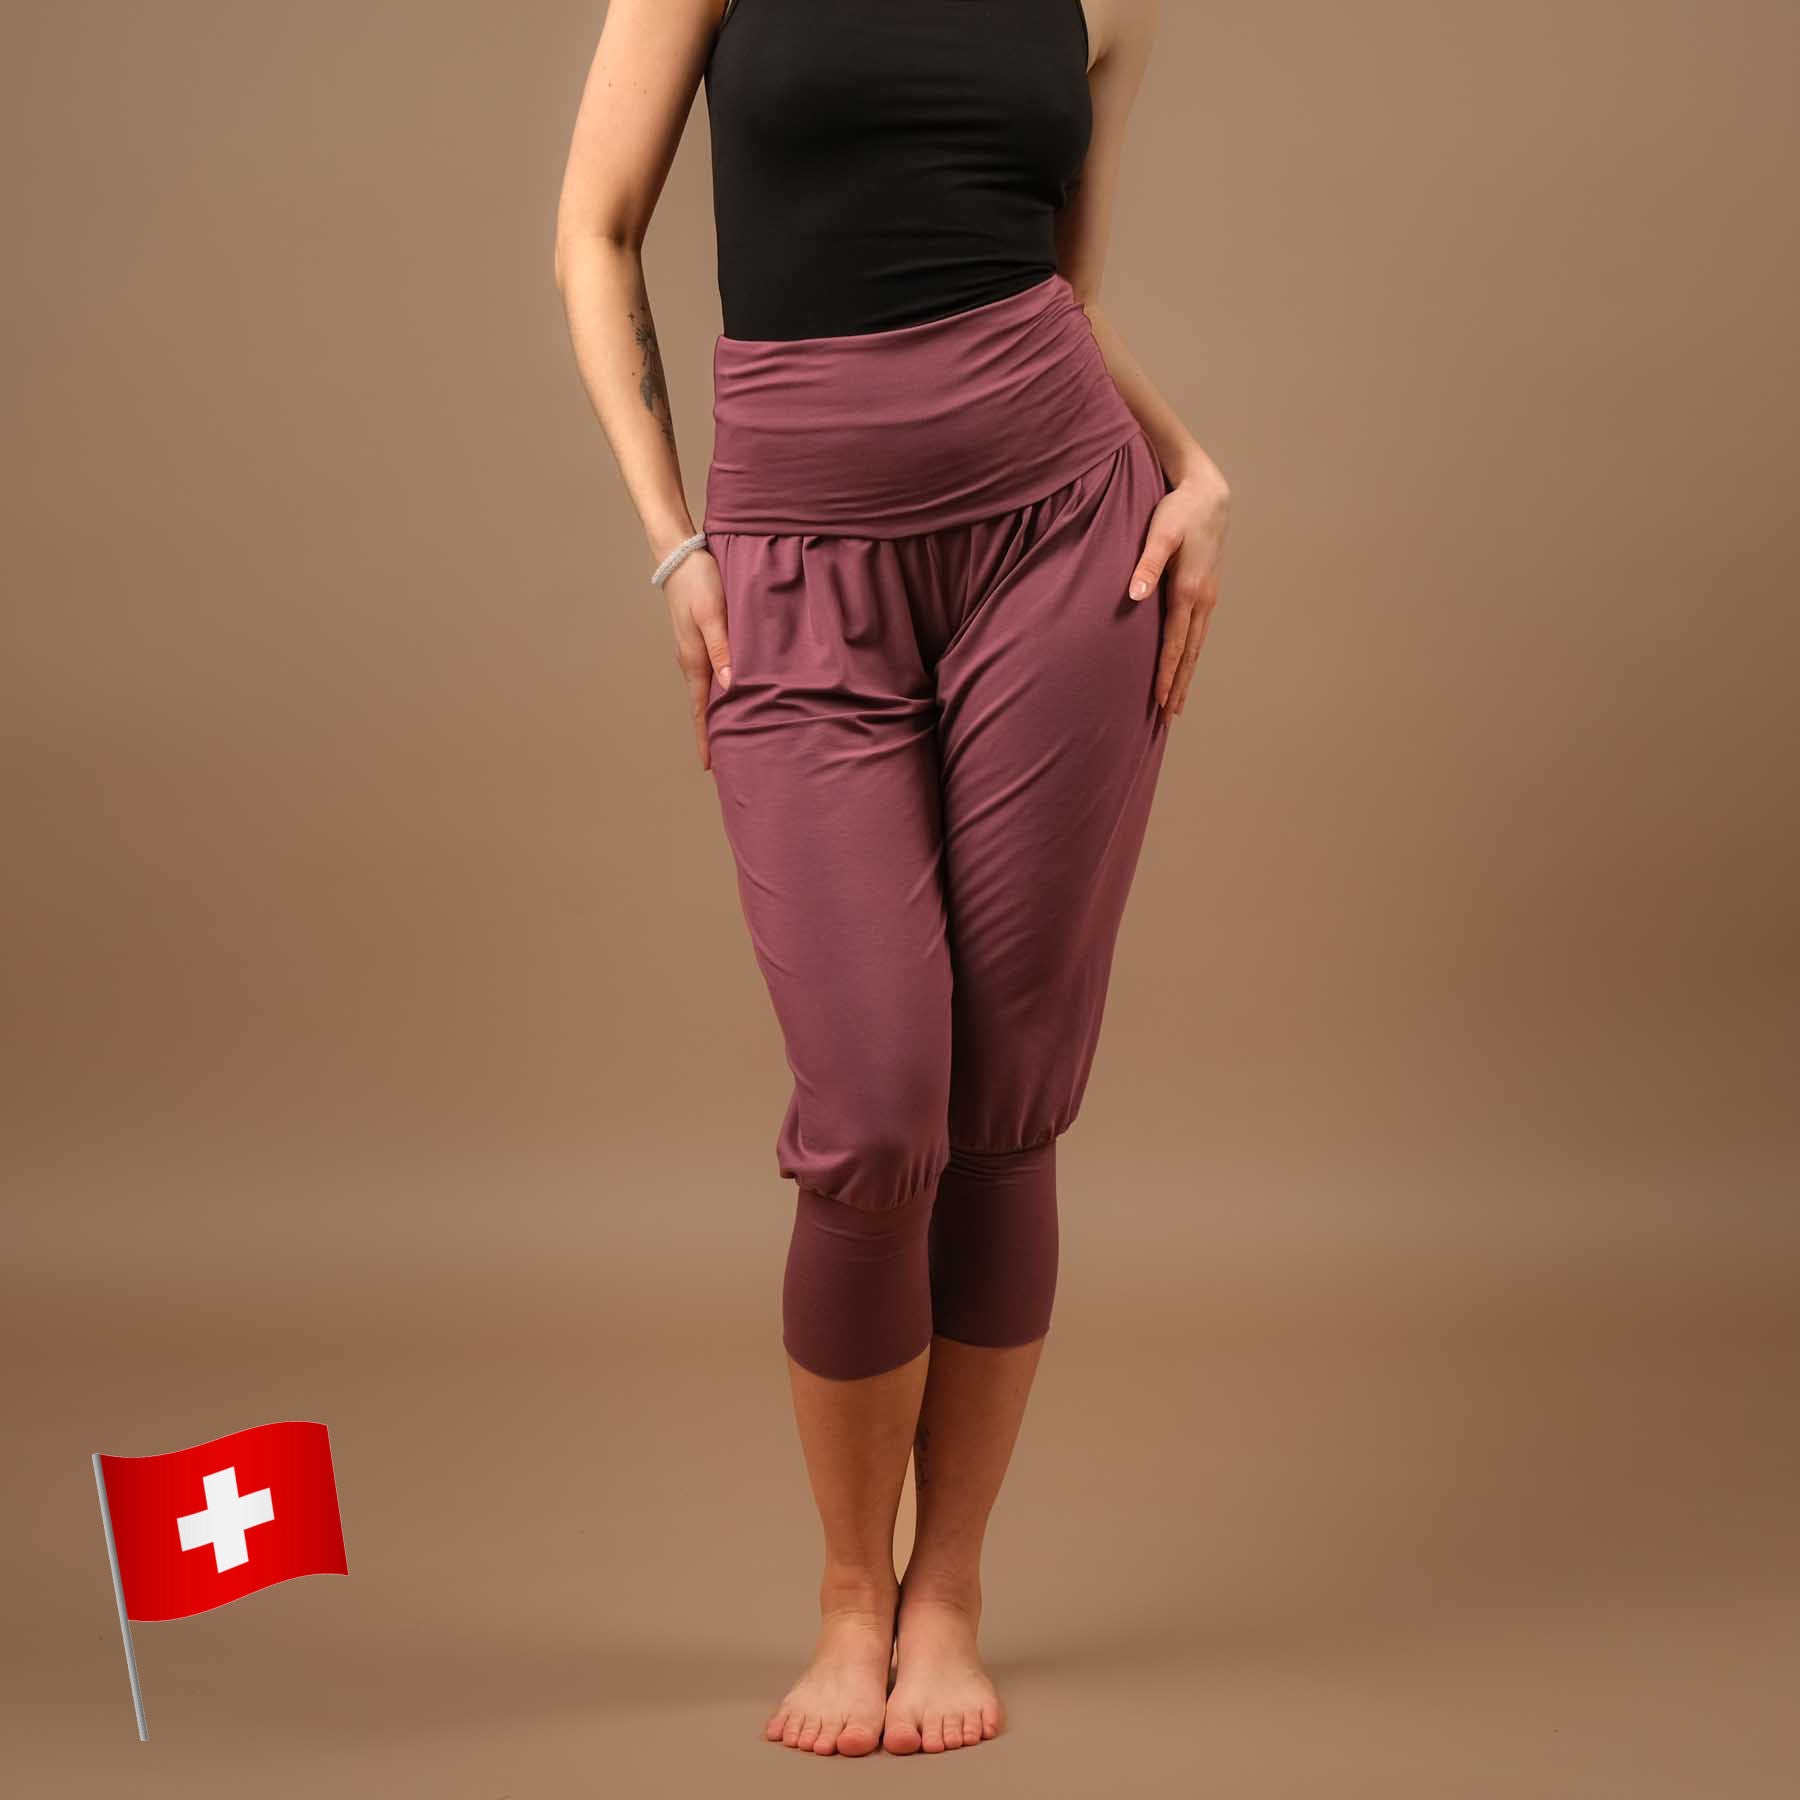 Nachhaltige lockere Yoga Hose Haremshose 3/4 Taj Mahal in der Schweiz hergestellt, aubergine